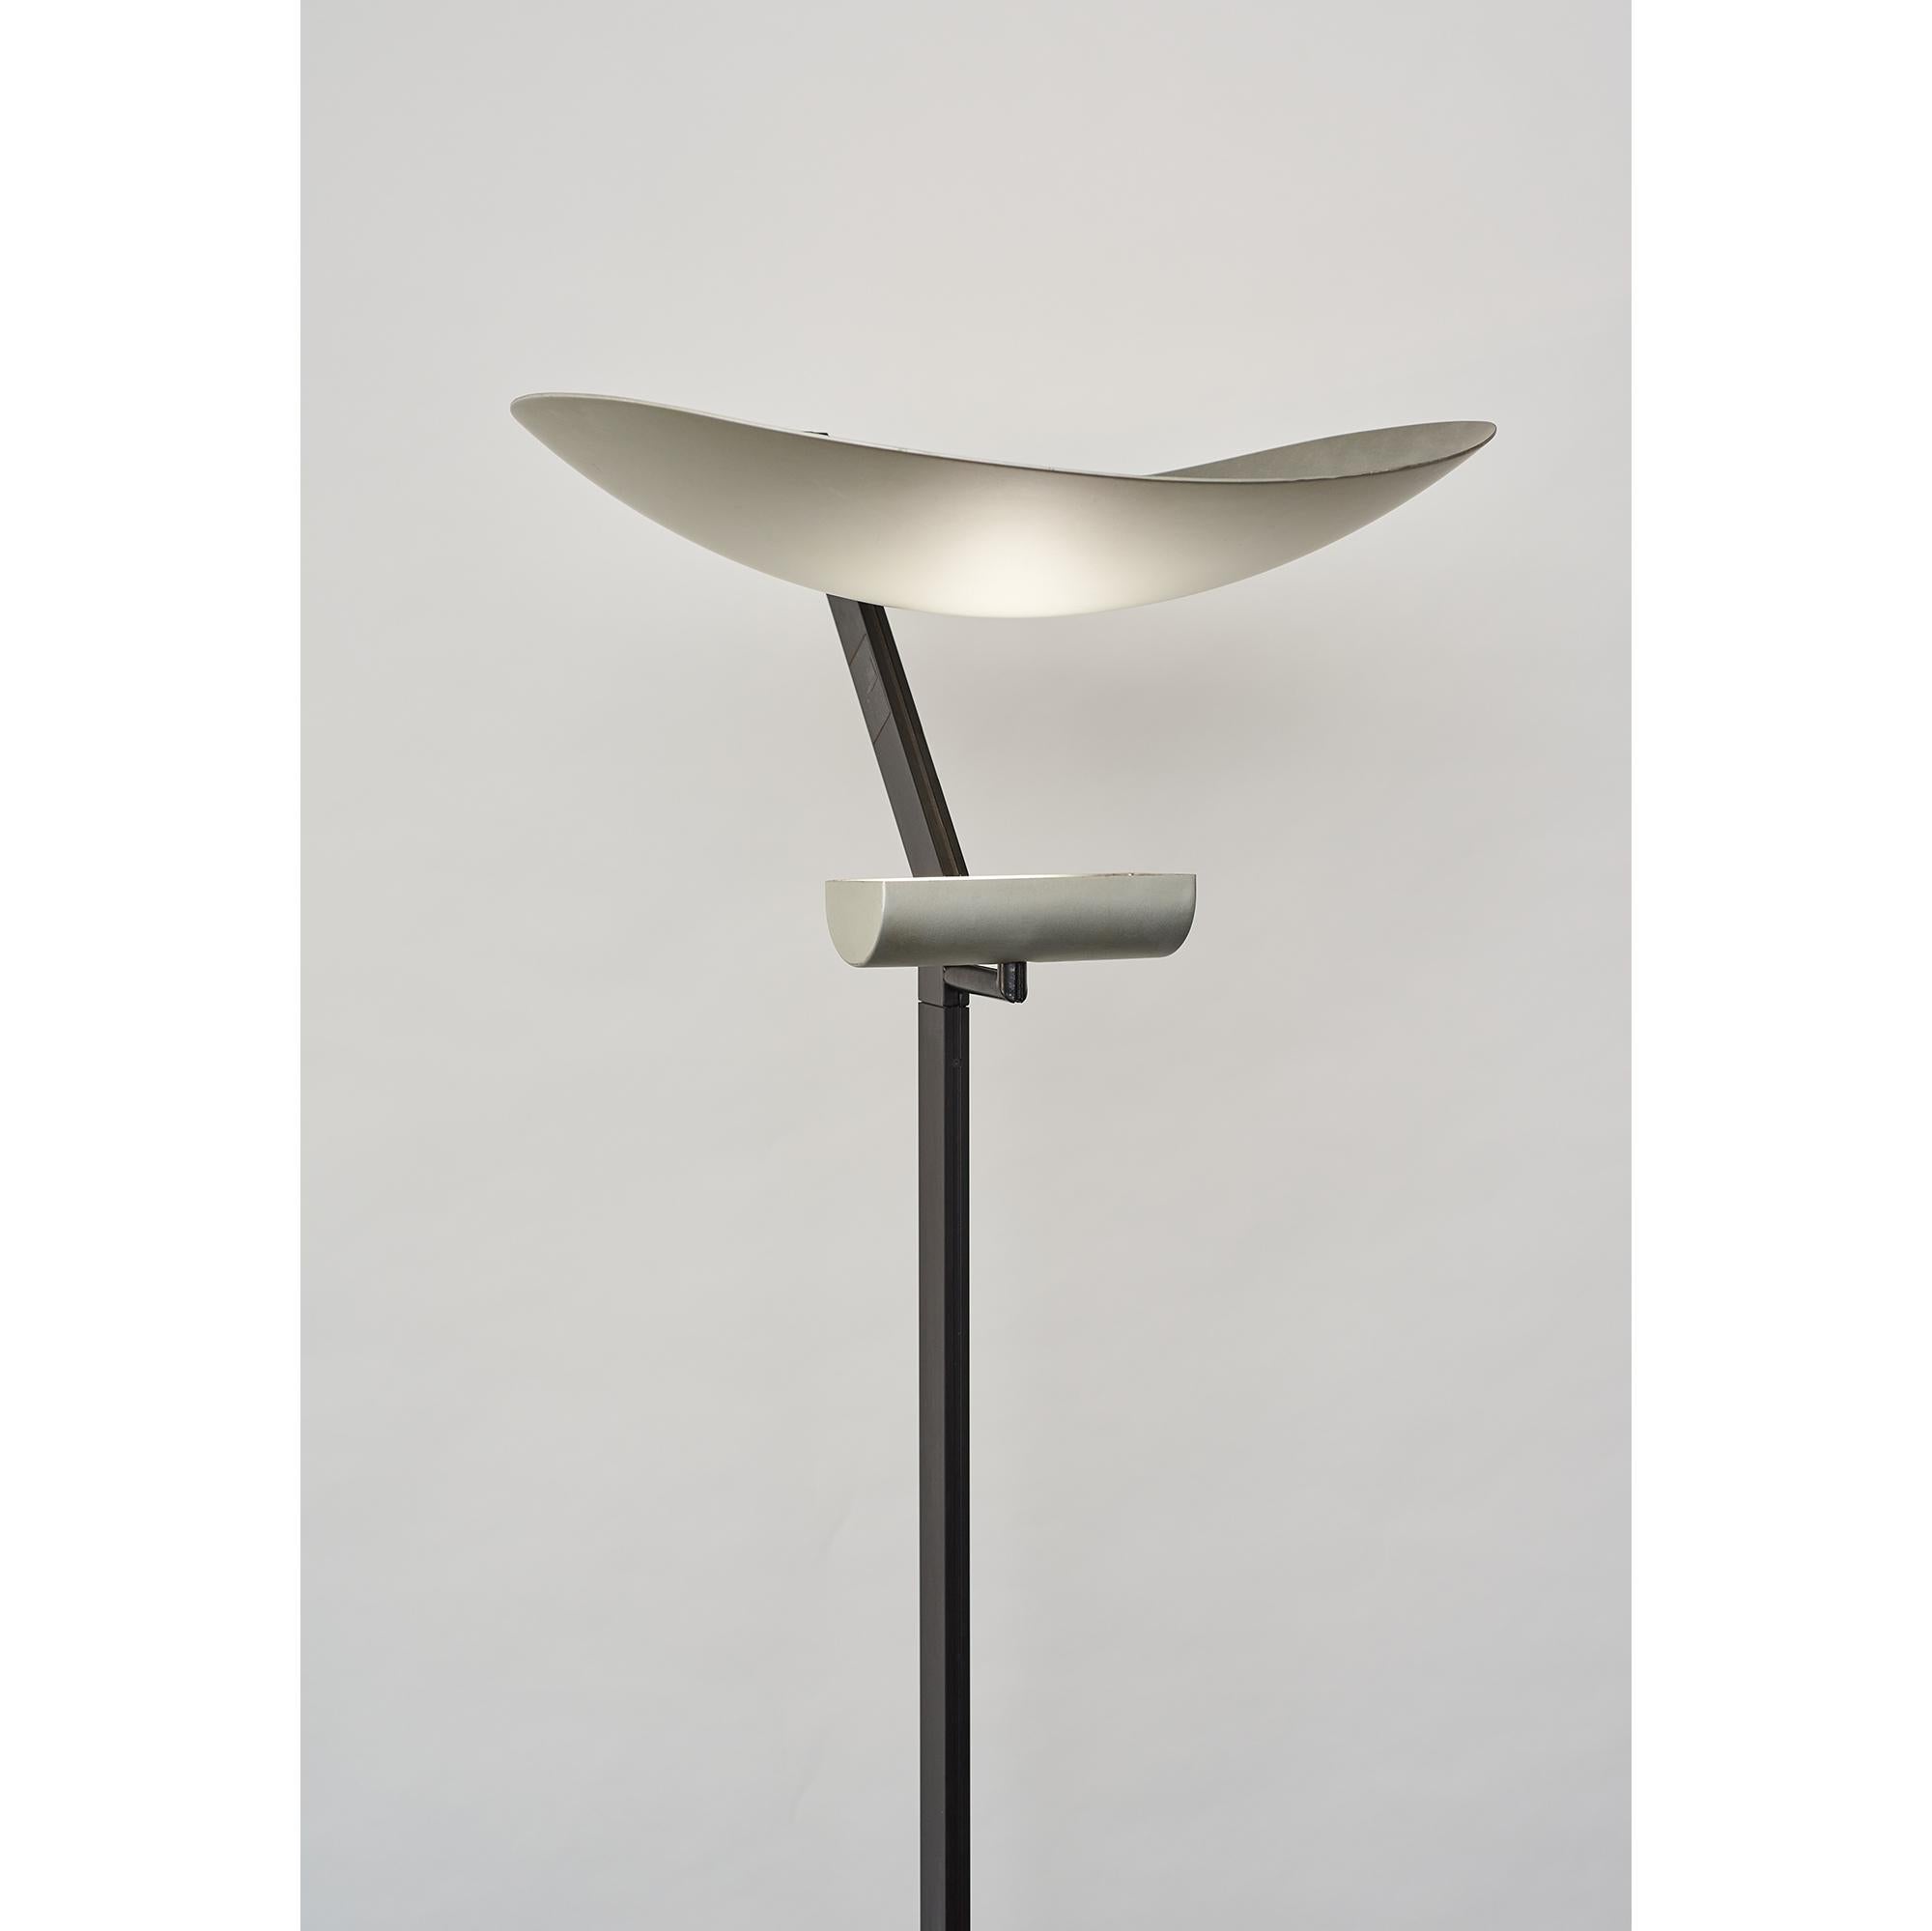 Italian Zen Floor Lamp Designed by Ernesto Gismondi for Artemide circa 1980